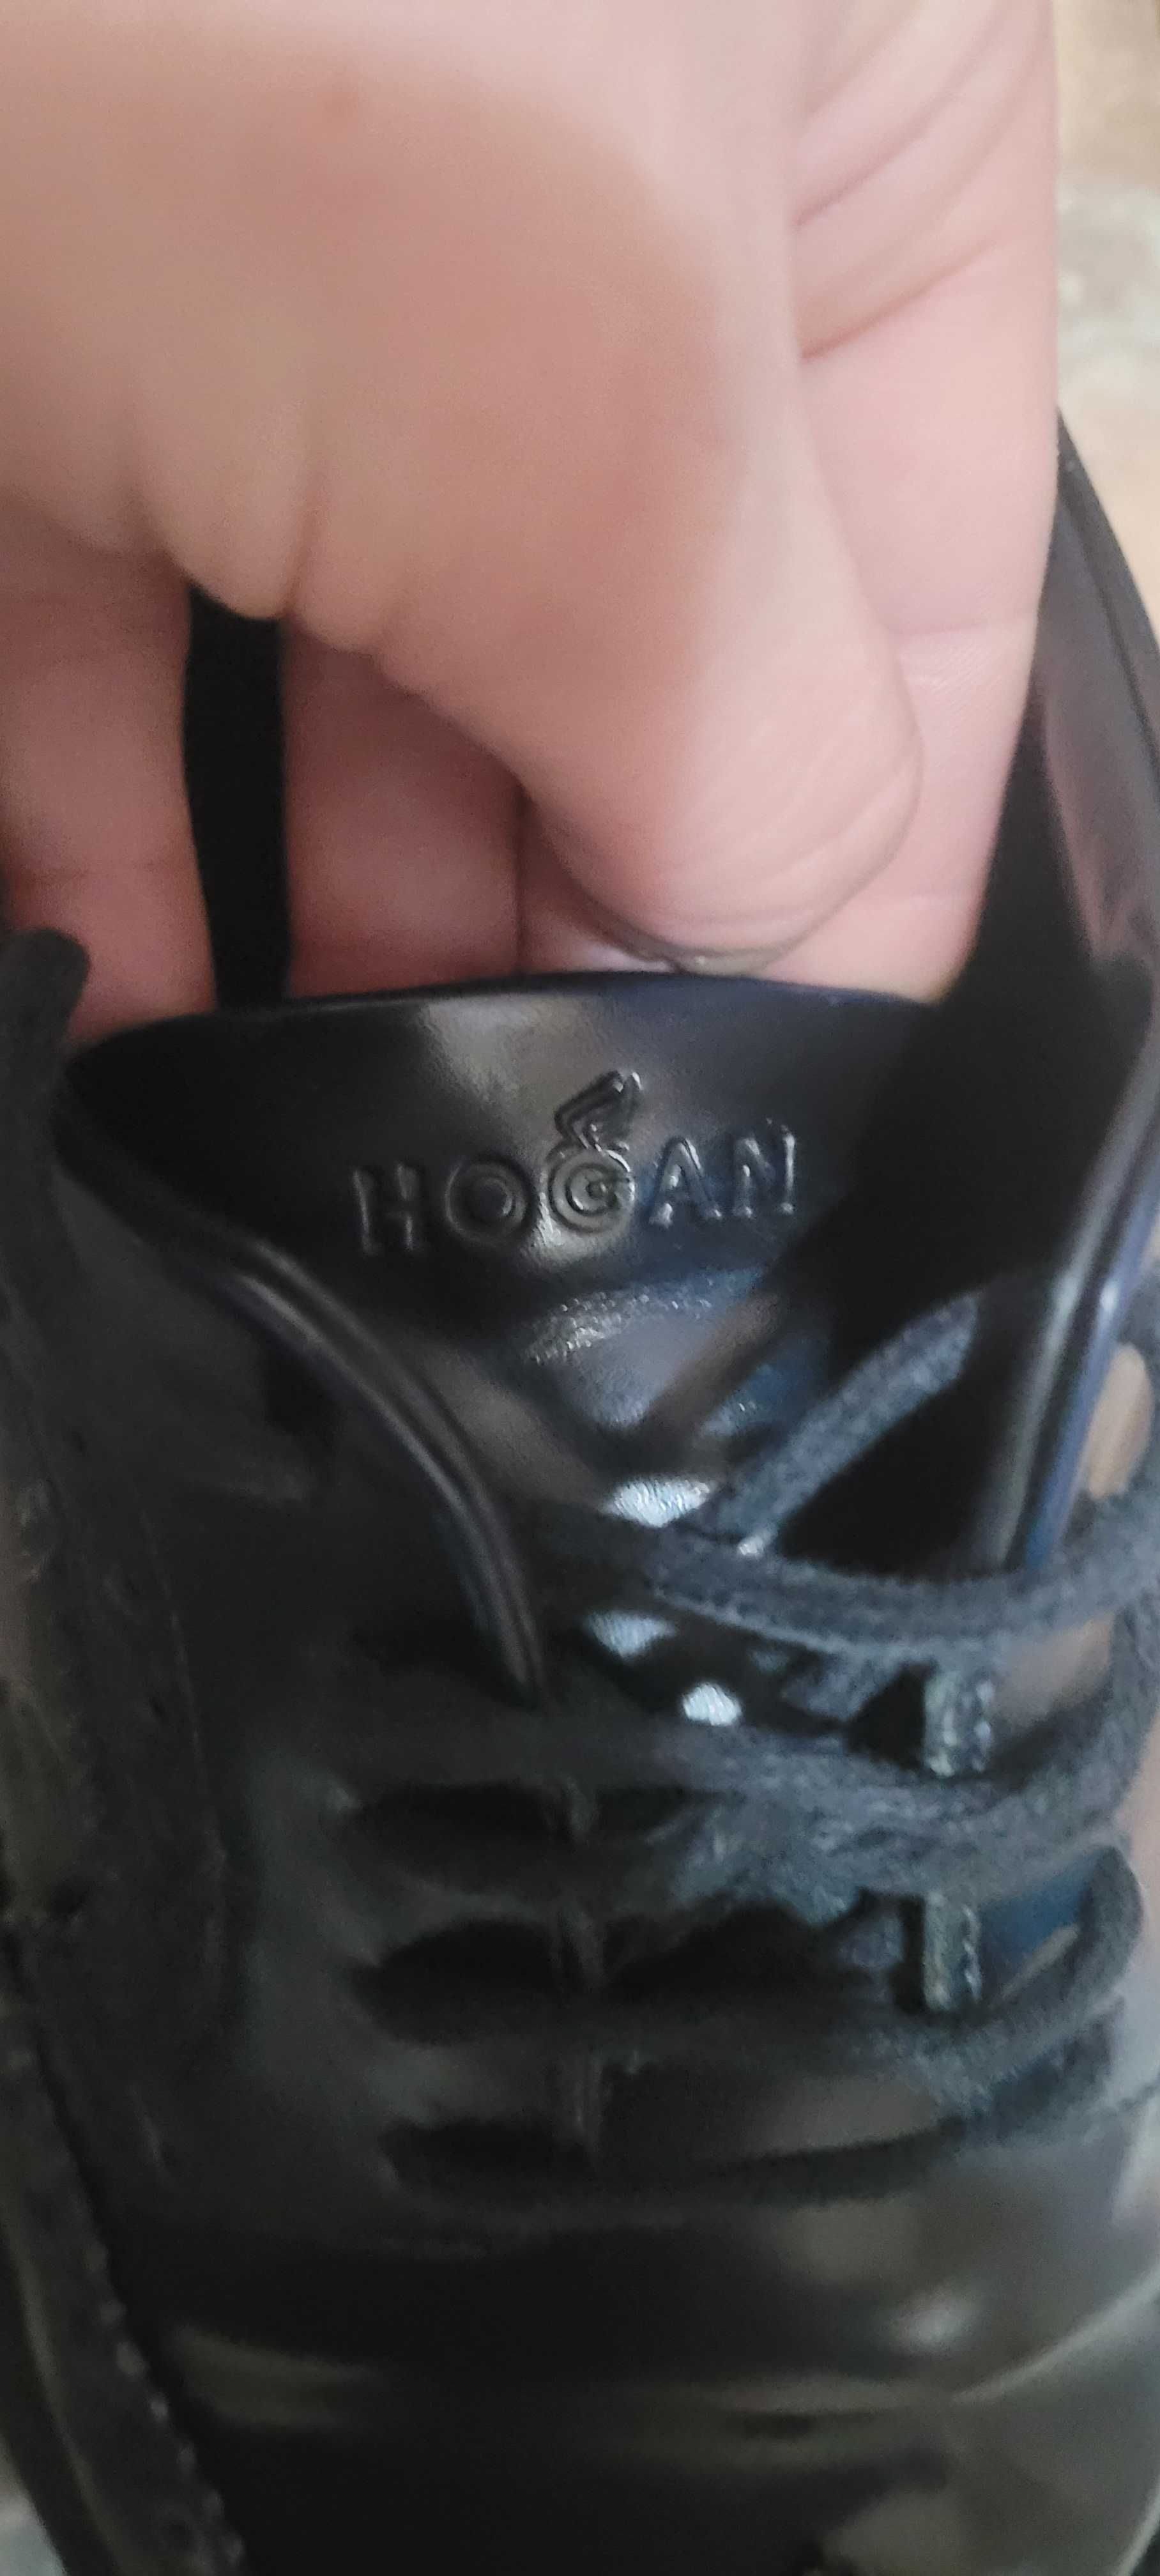 Pantofi barbatesti   model Hogan